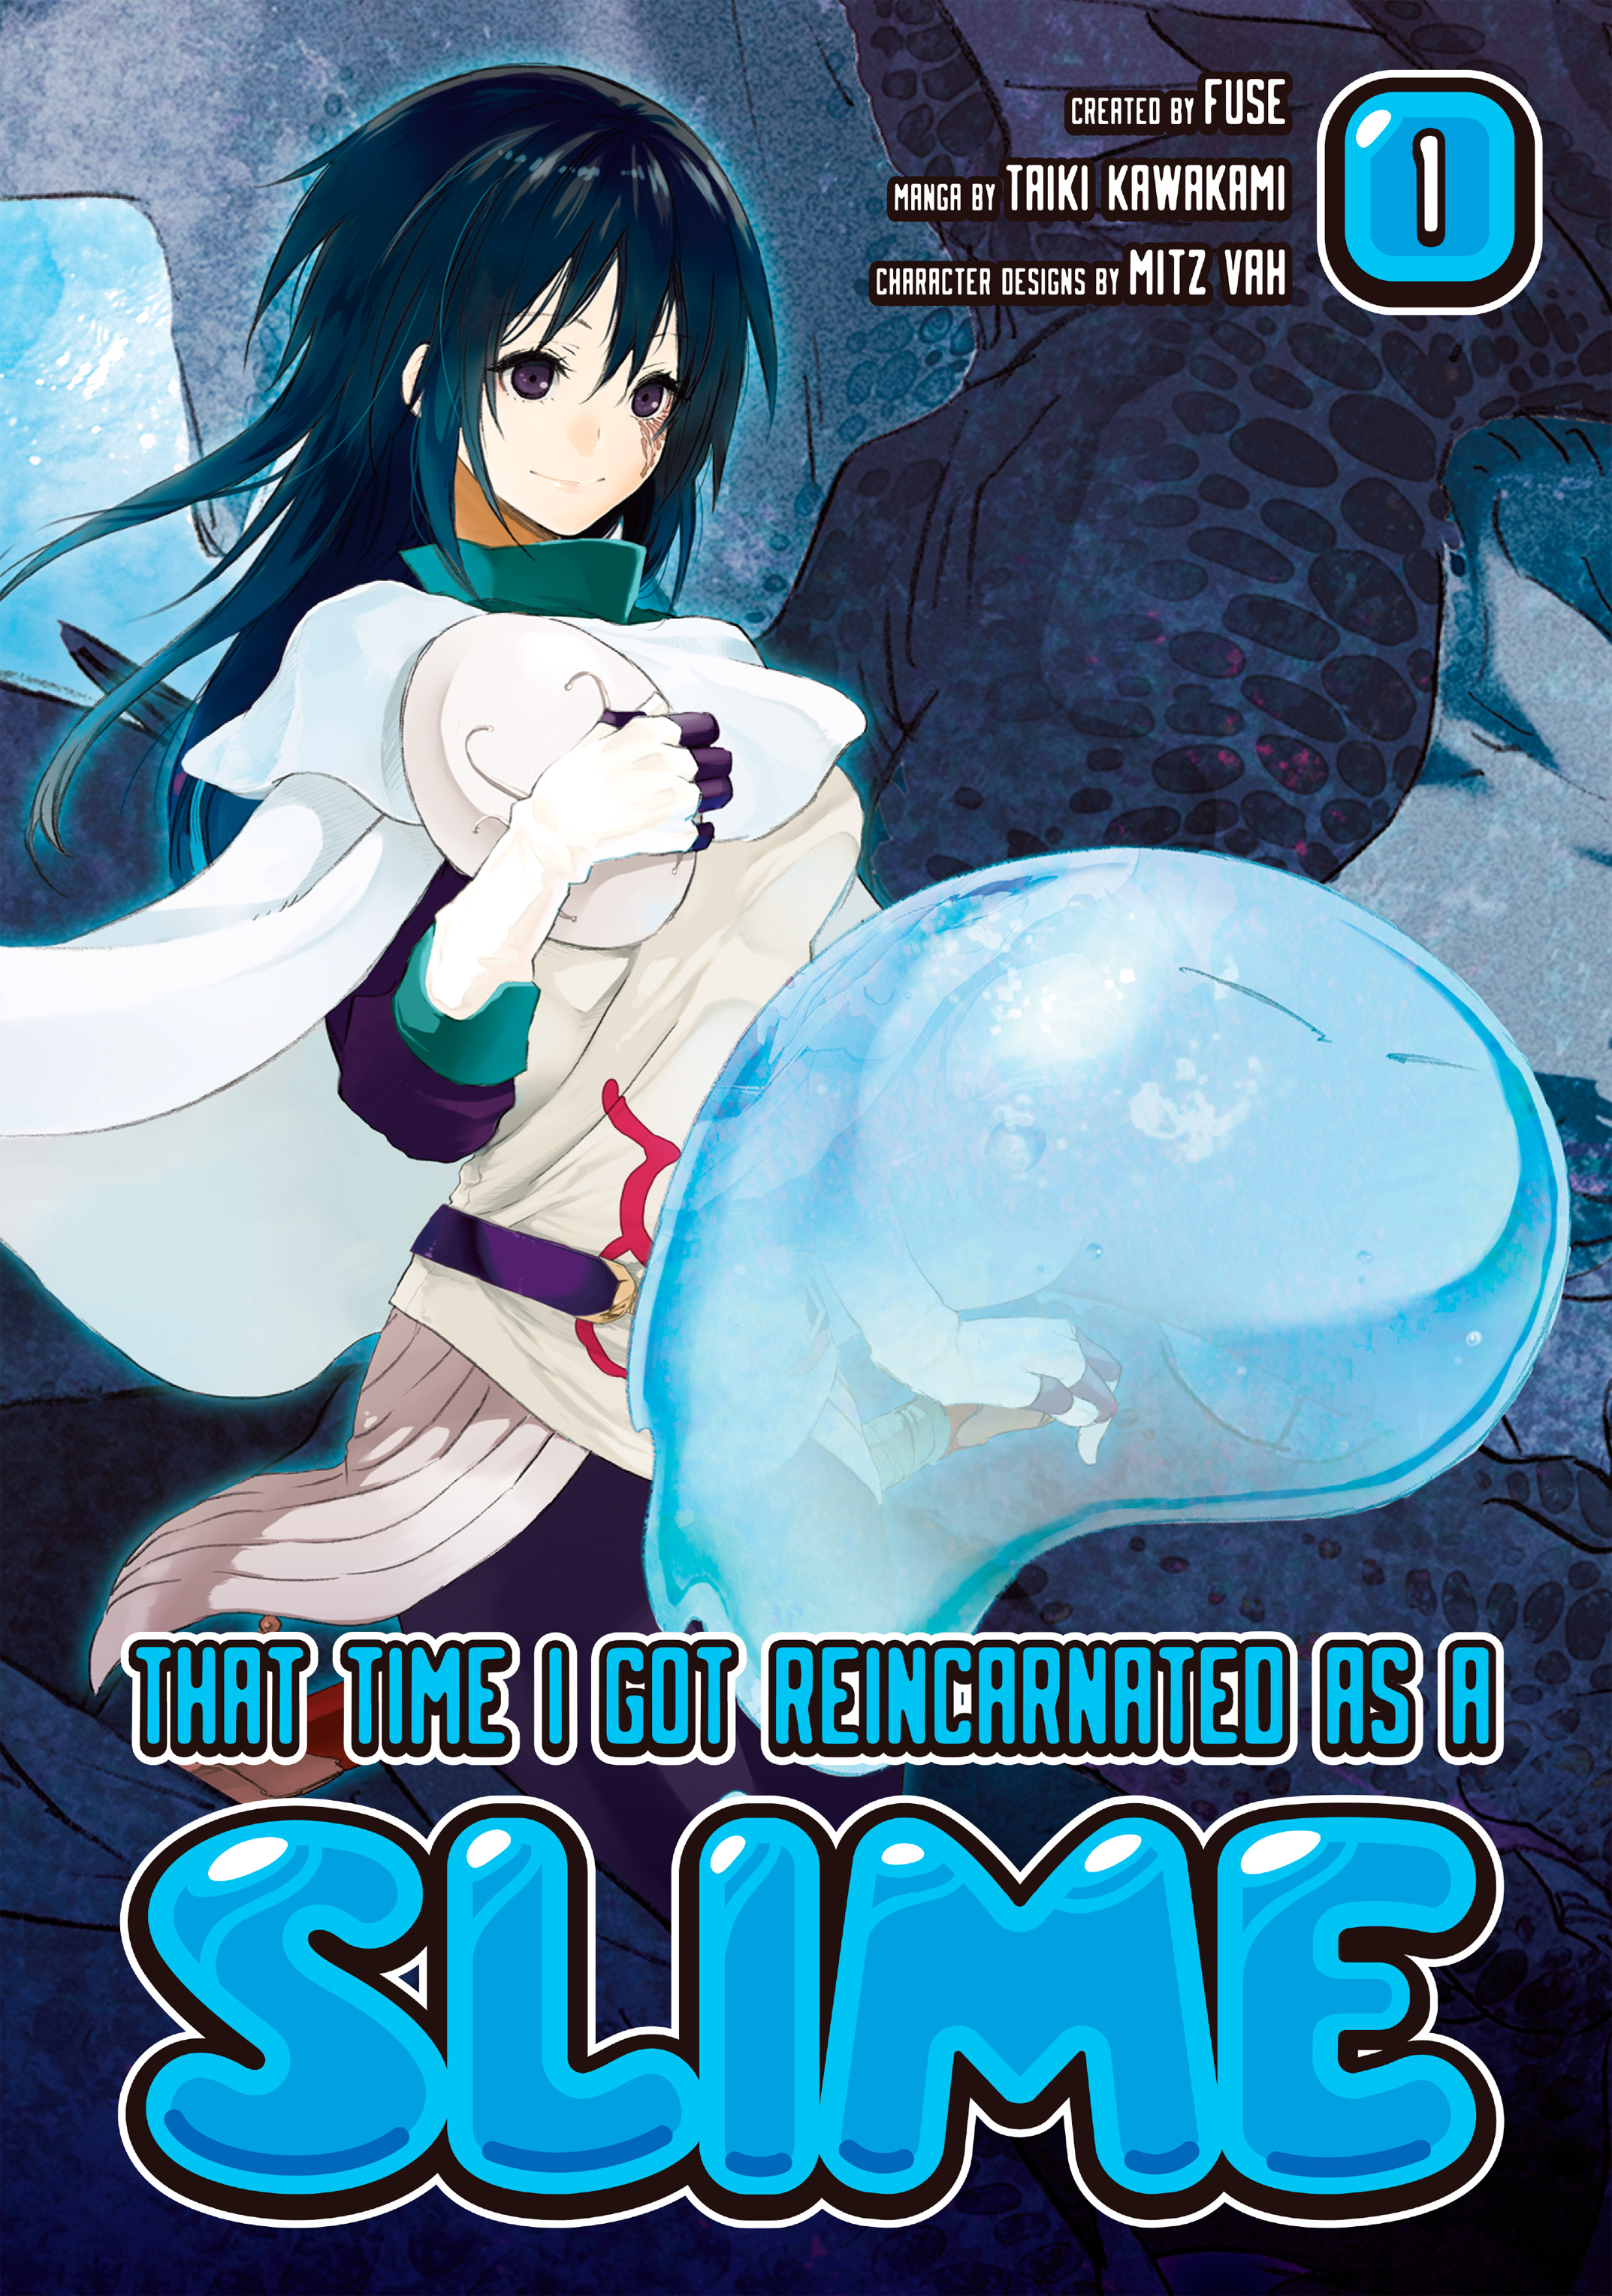 Manga Volume 3, Tensei Shitara Slime Datta Ken Wiki